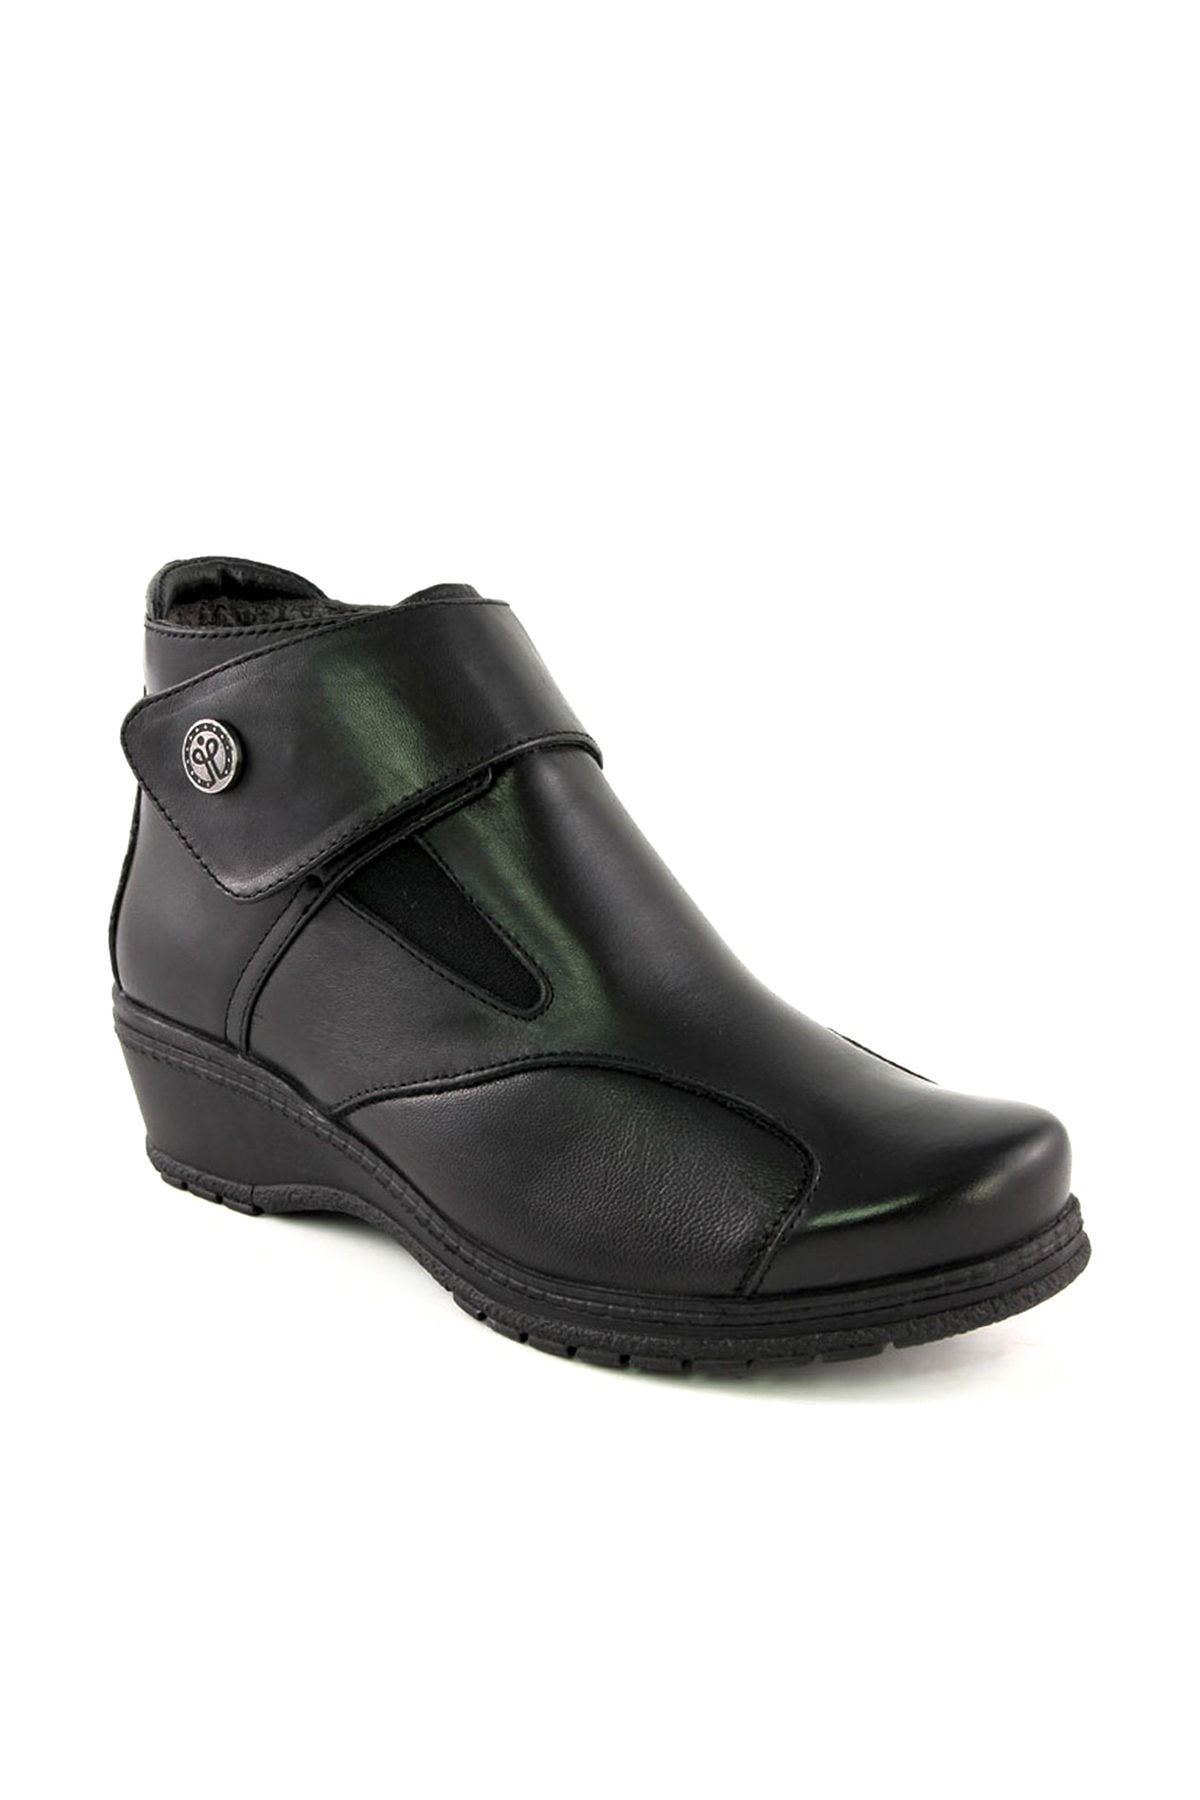 Forelli Vıonıc-k Klasik Kadın Bot Ayakkabı Siyah